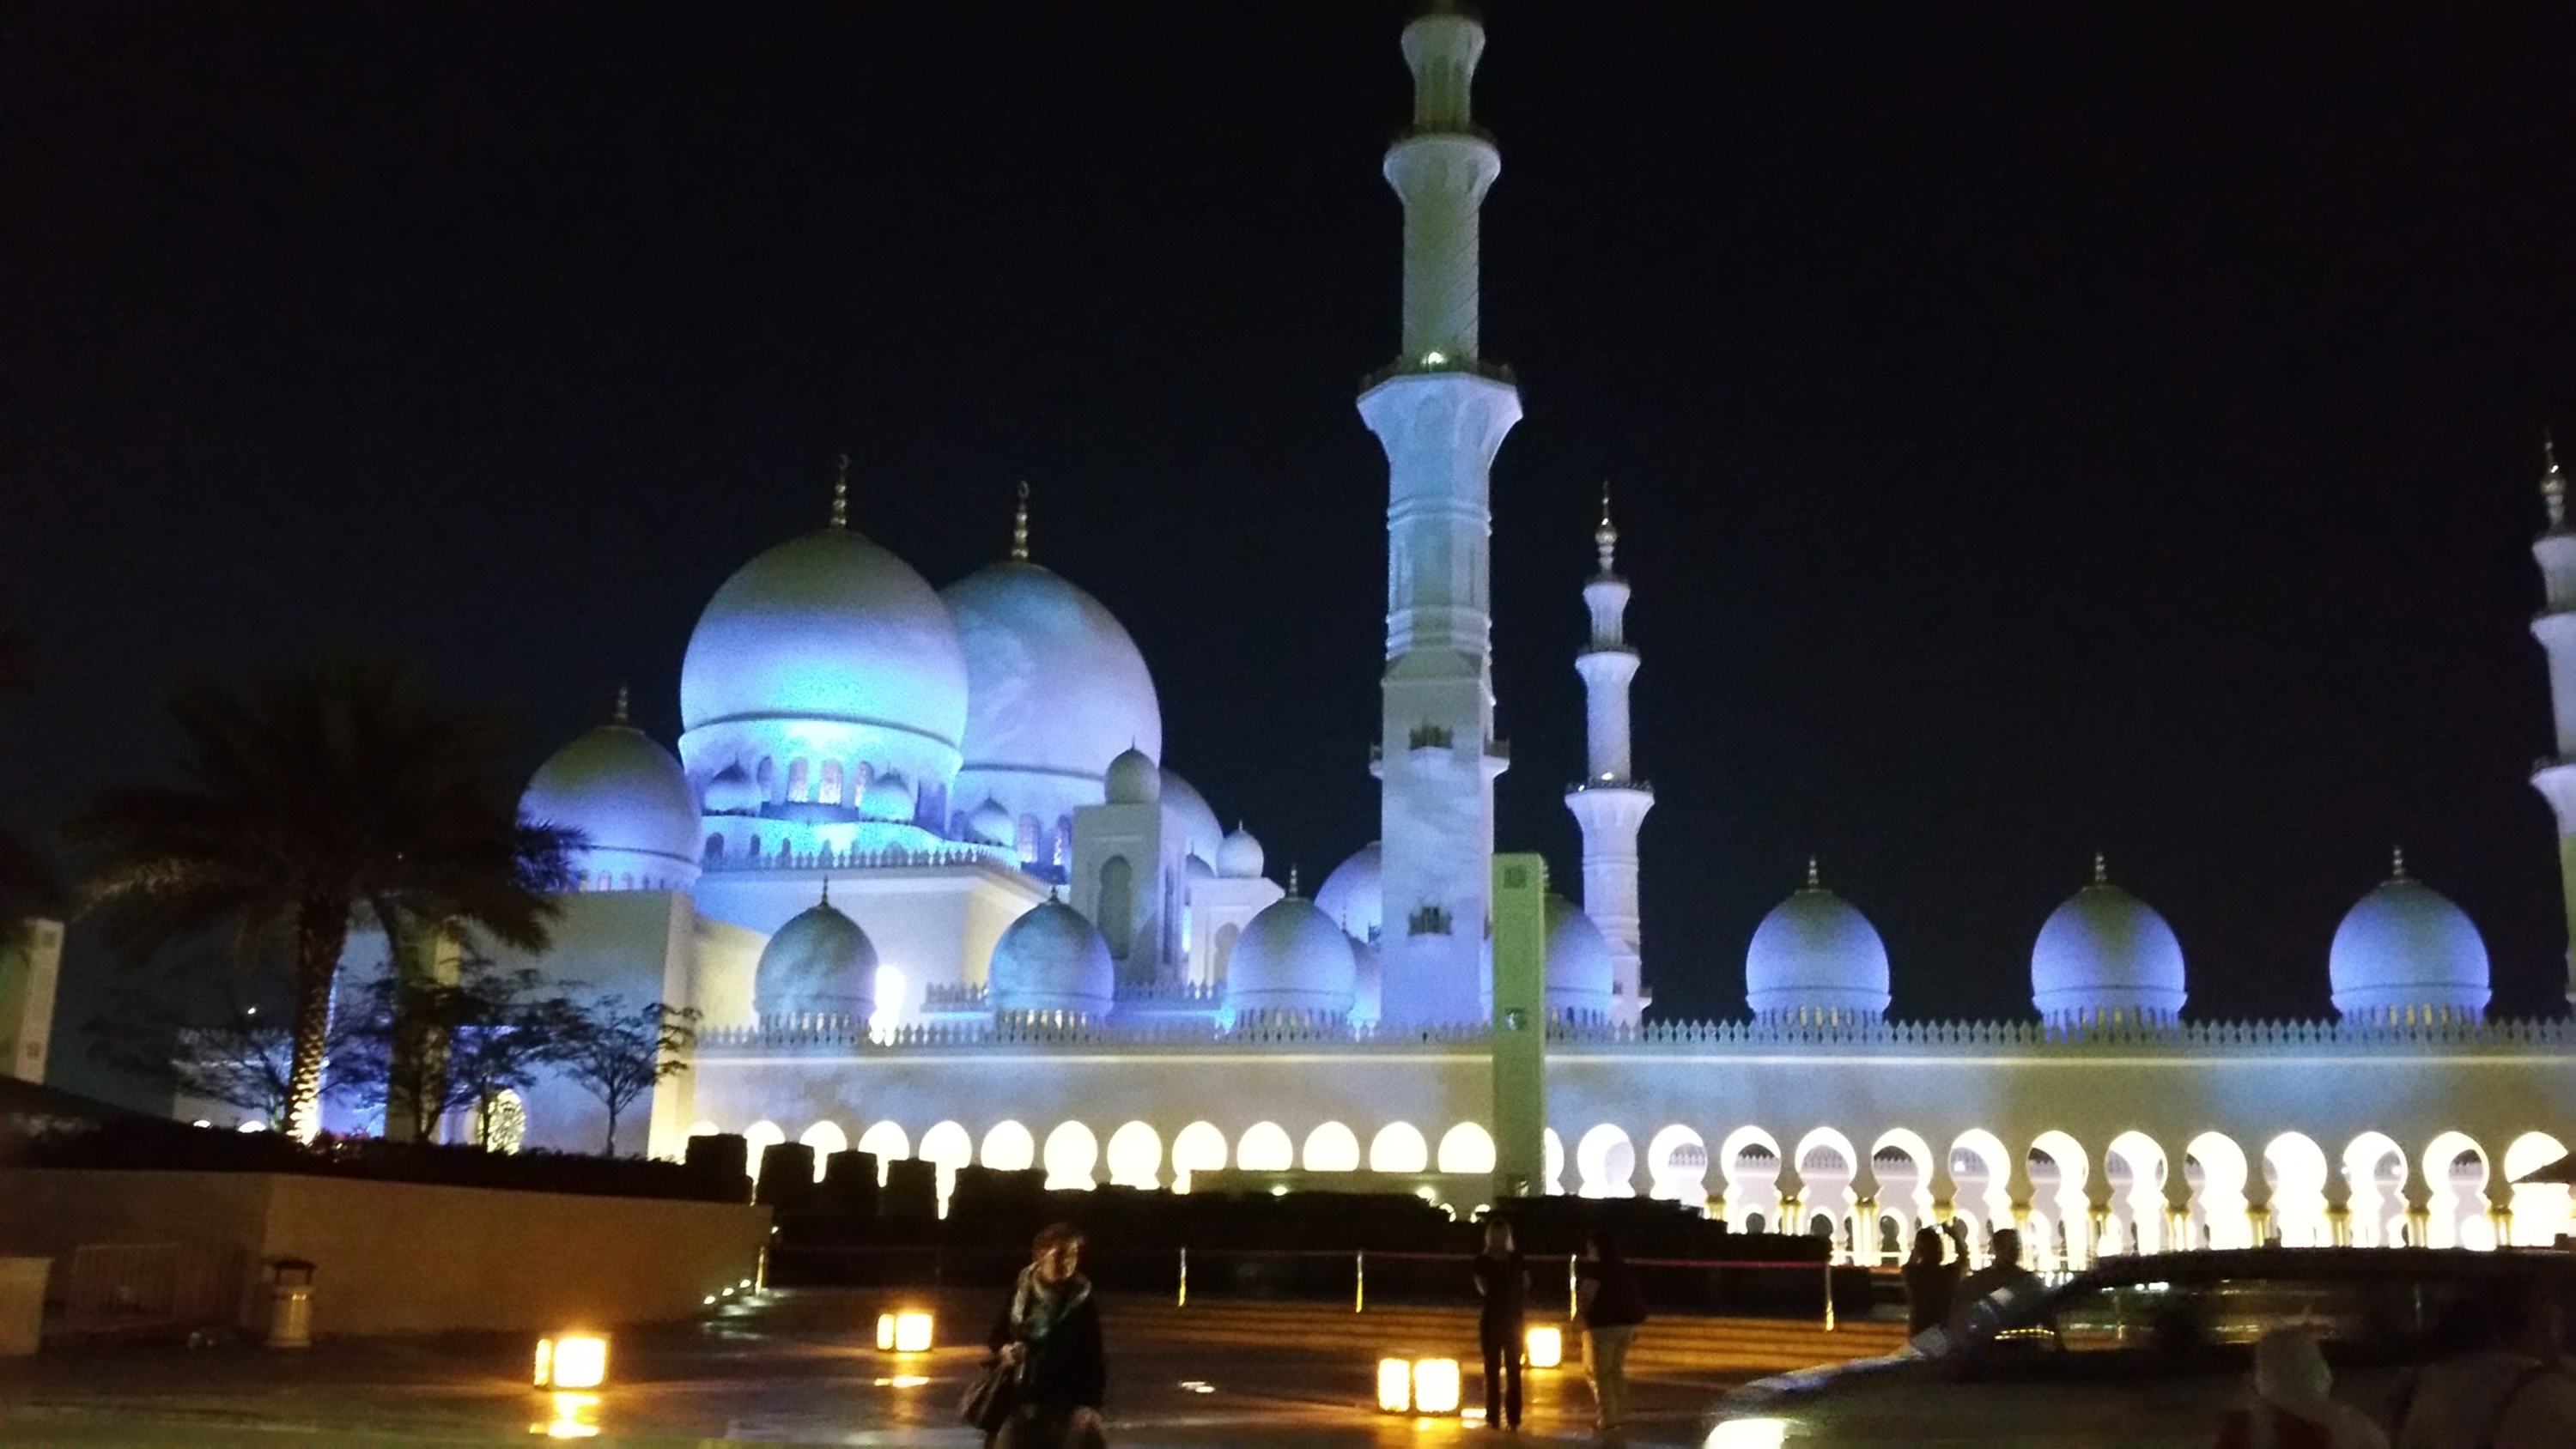 Abu Dhabi Moschee